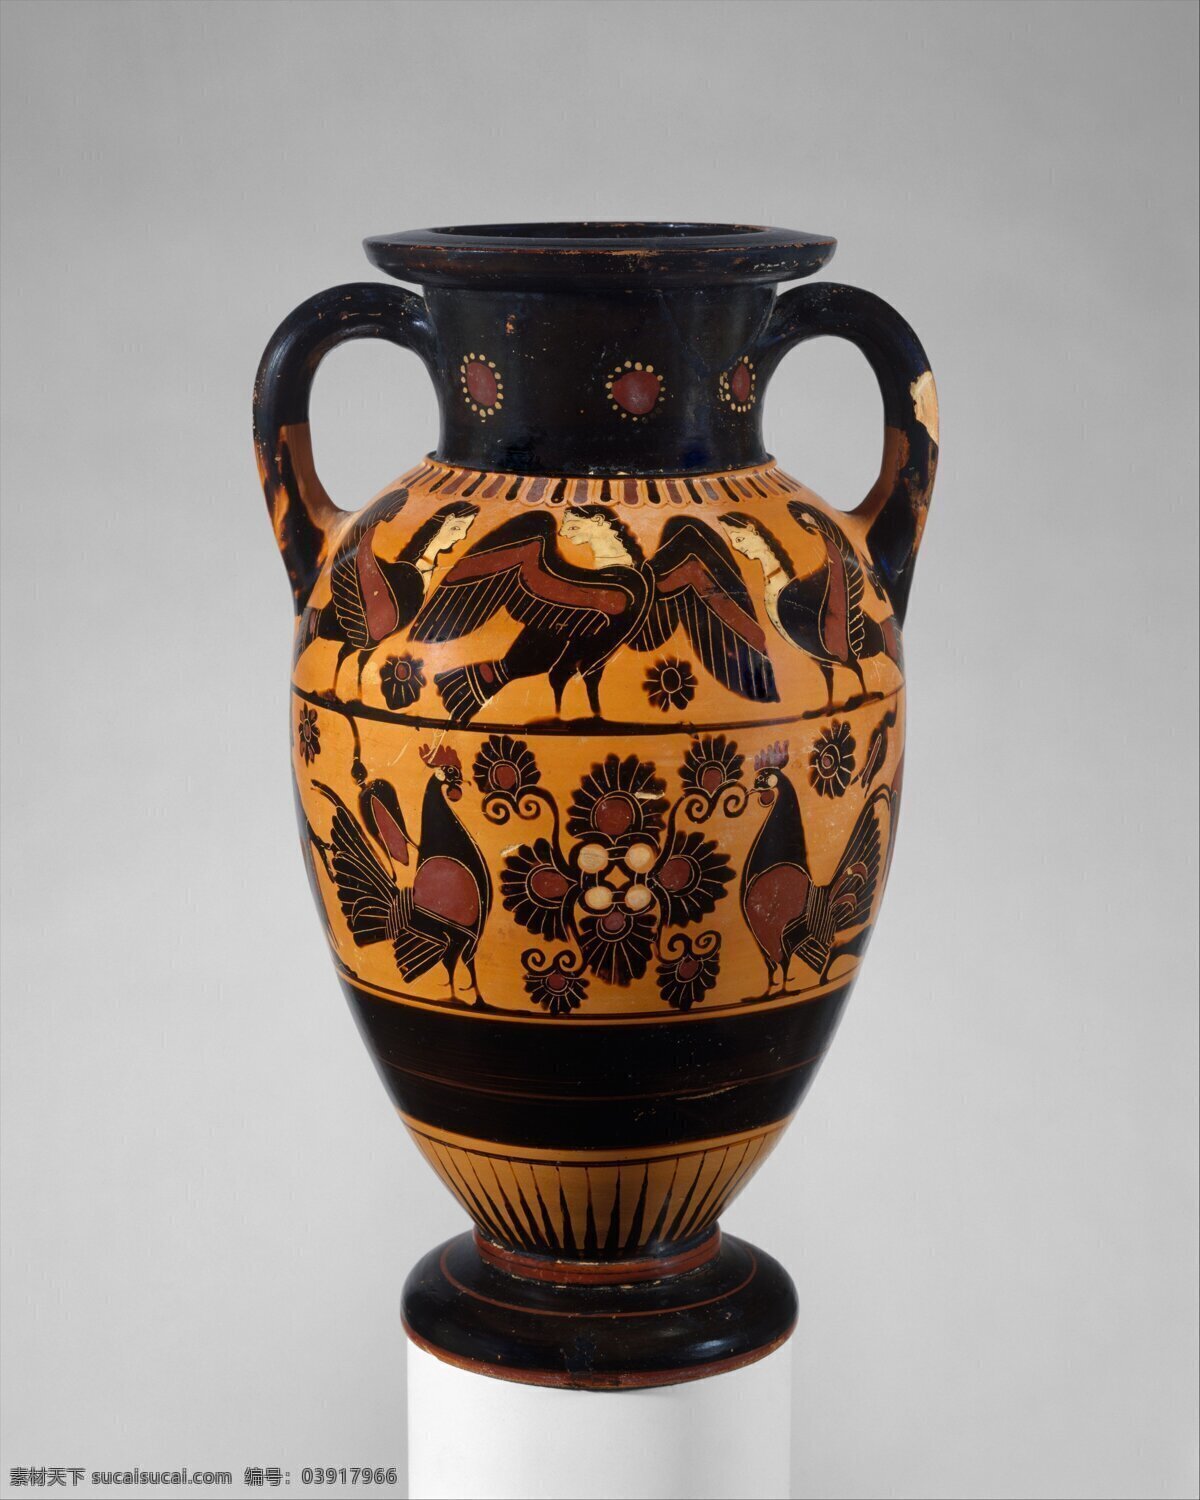 希腊陶瓶 希腊 陶瓶 陶器 瓶子 黑绘式 古希腊 传统文化 文化艺术